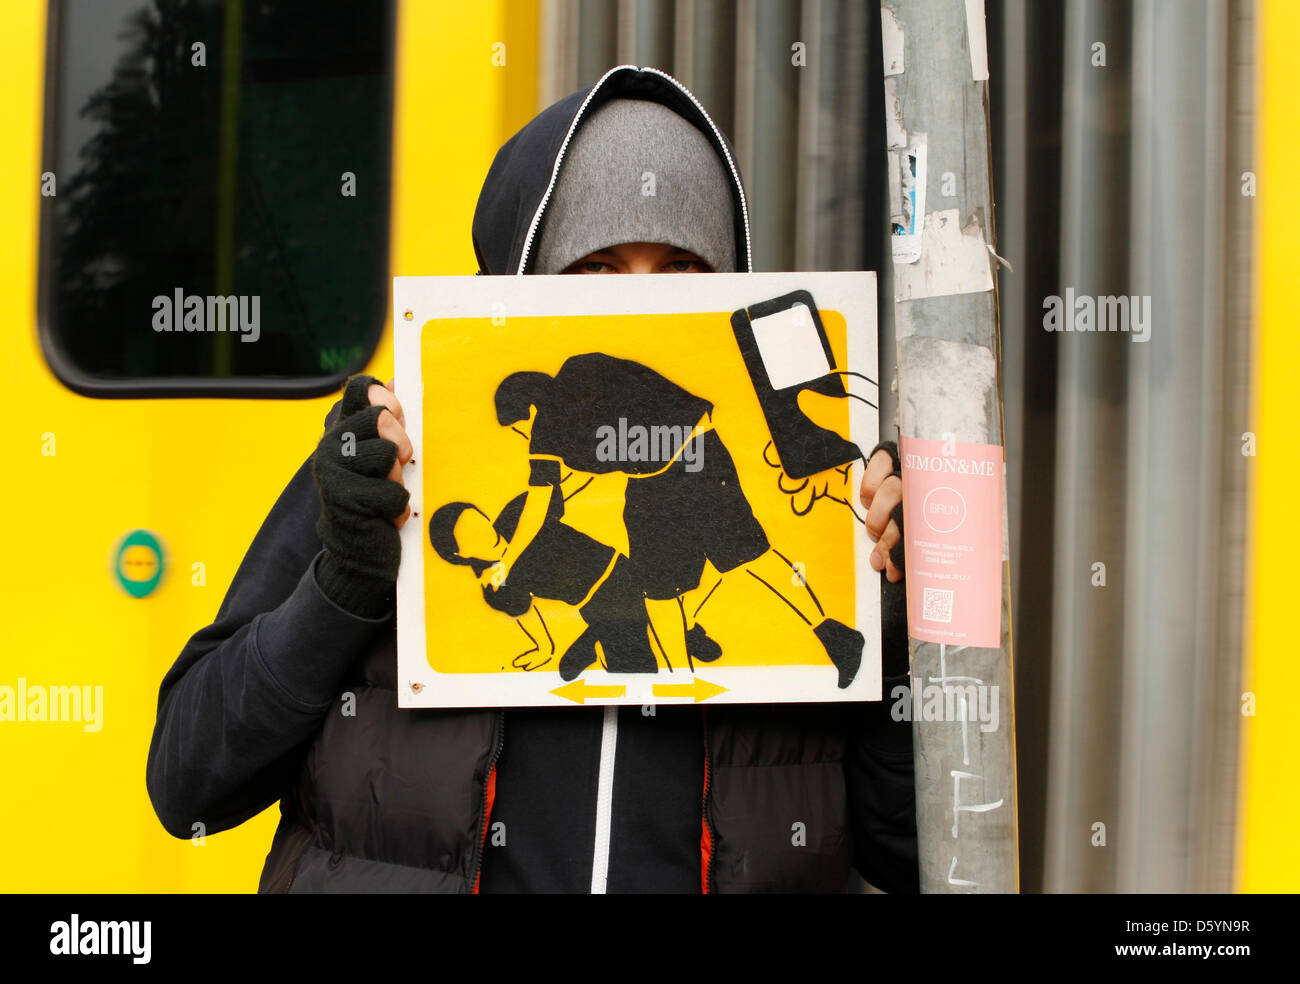 El Bocho artiste présente un de ses pictogrammes dans Berlin, Allemagne, 31 octobre 2012. La photo présente une scène où quelqu'un est battu pendant que quelqu'un filme la scène avec un téléphone mobile. Strett El Bocho artiste de Berlin a commencé un art d'action contre la violence dans les grandes villes, le 31 octobre 2012. Il a l'intention de mettre en place plus de 250 pictogrammes des scènes de violence à Berlin, une Banque D'Images